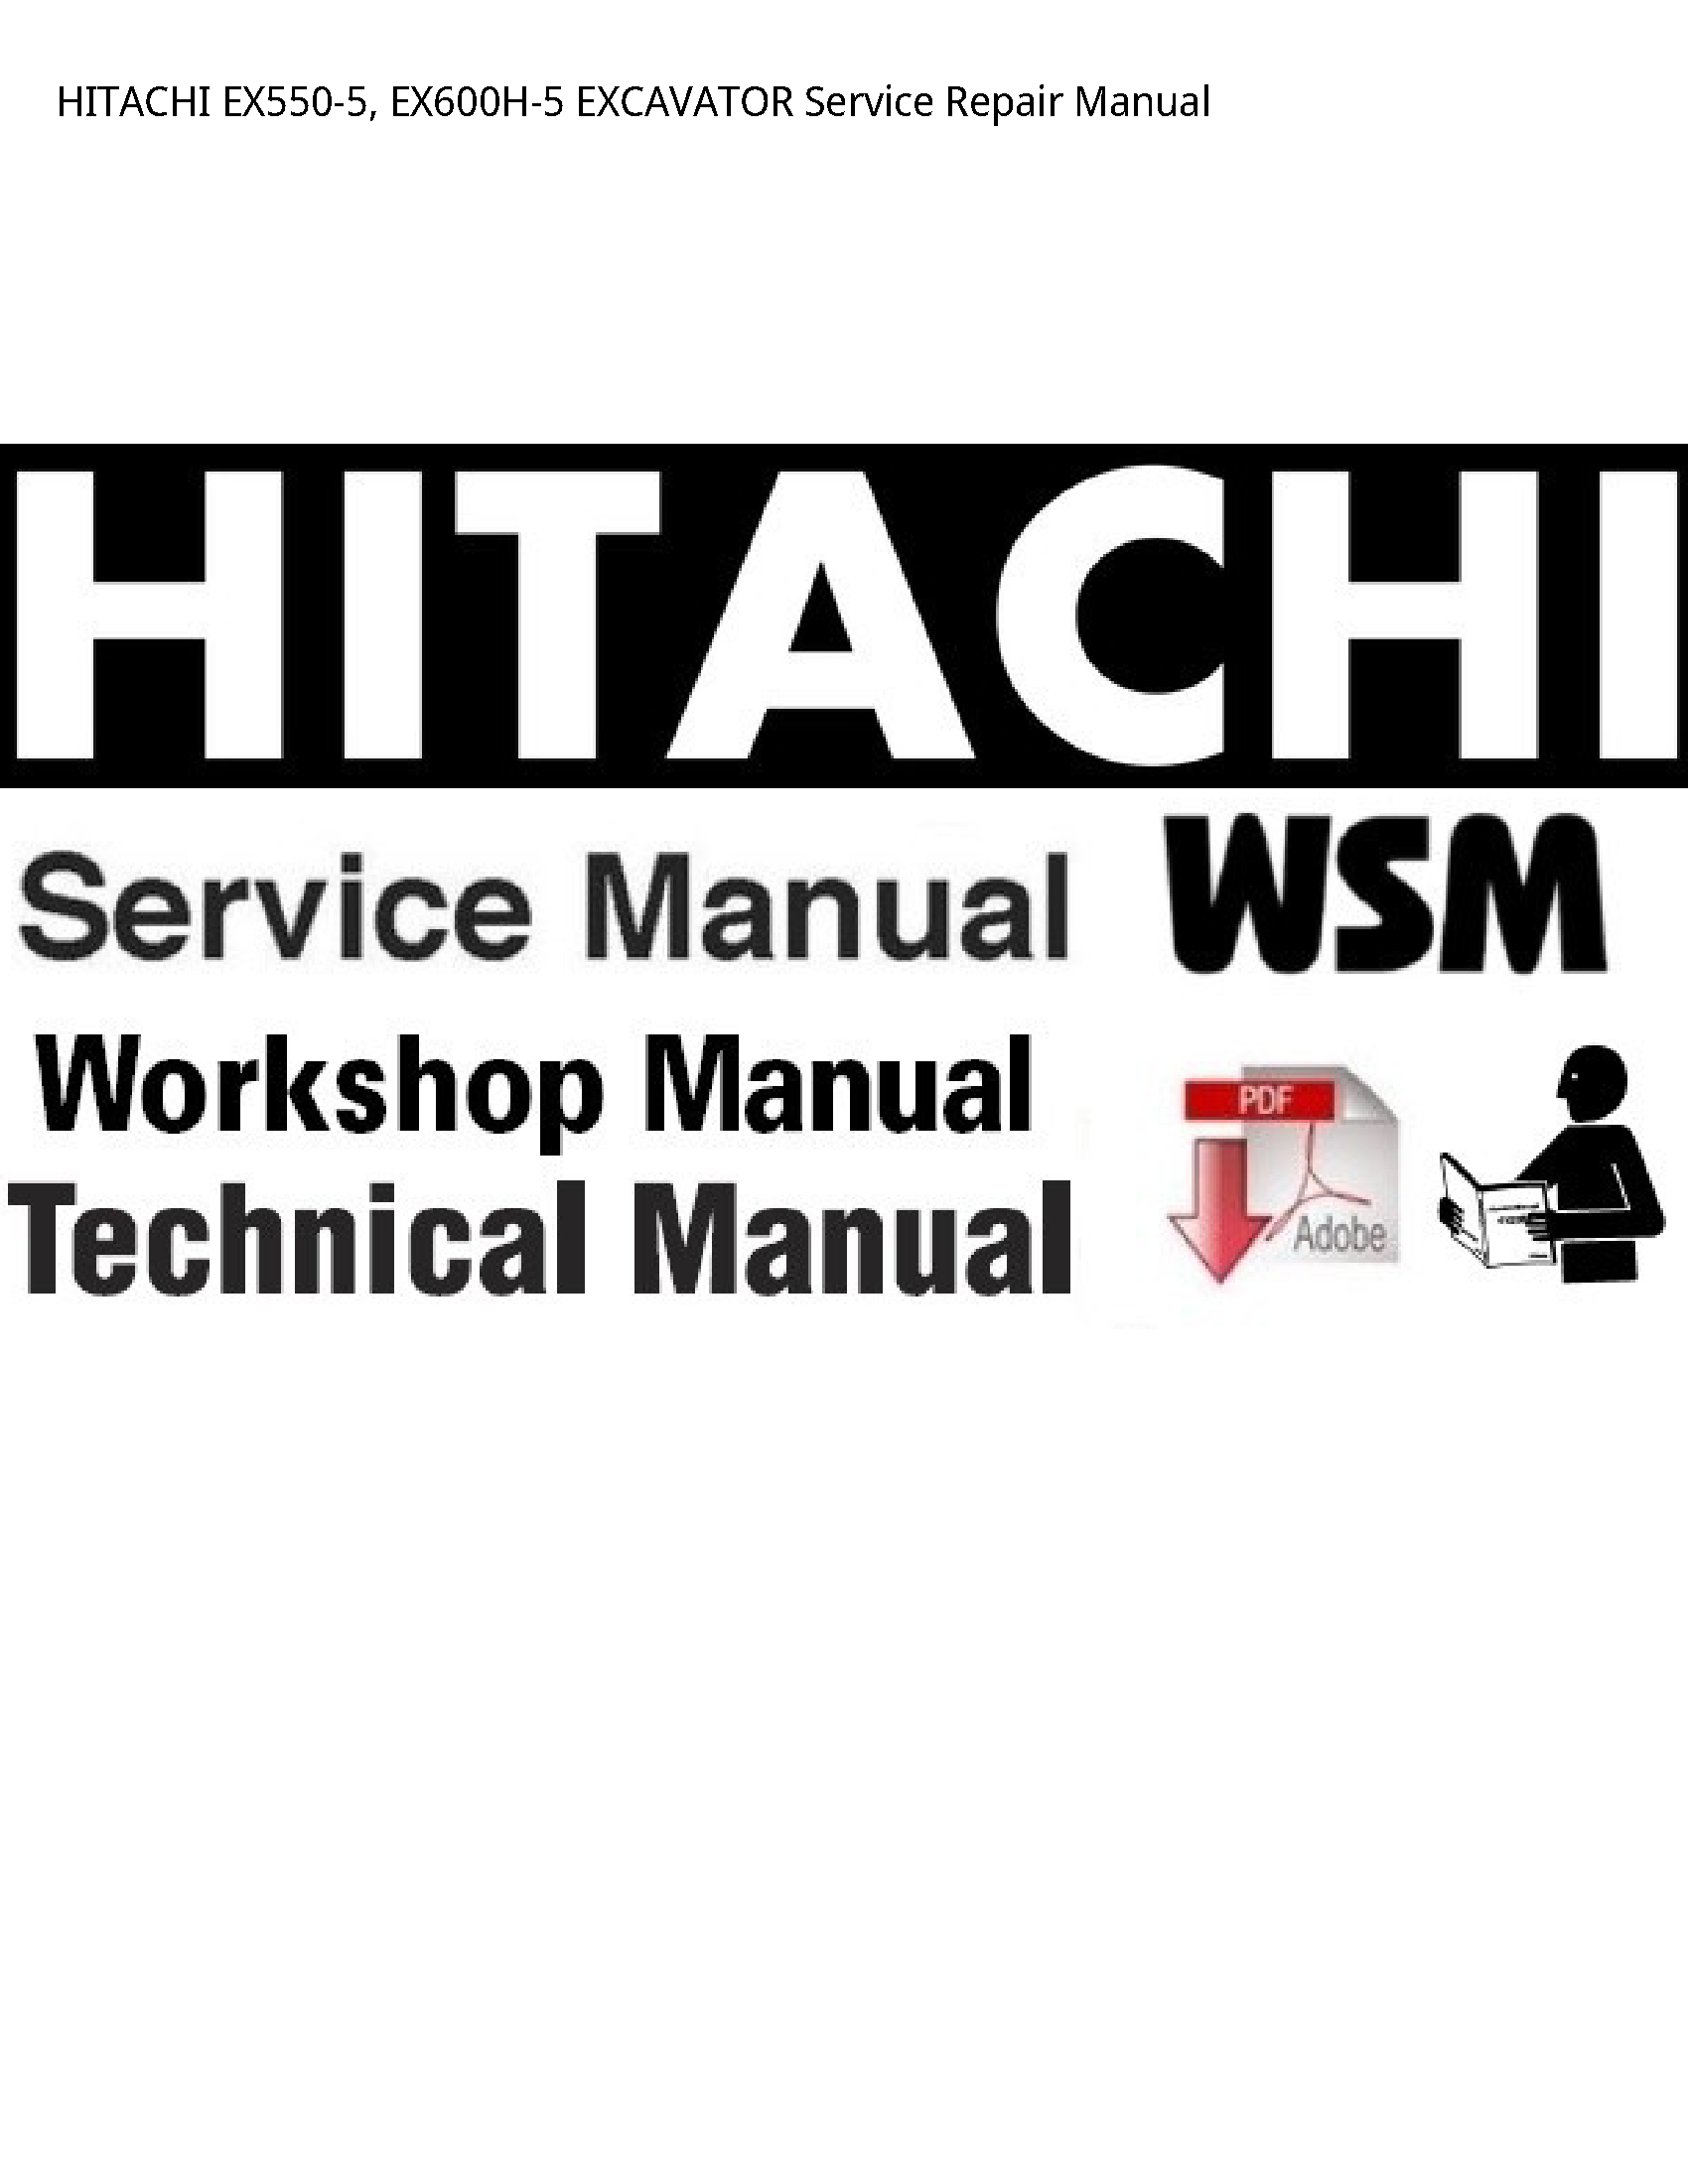 Hitachi EX550-5 EXCAVATOR manual